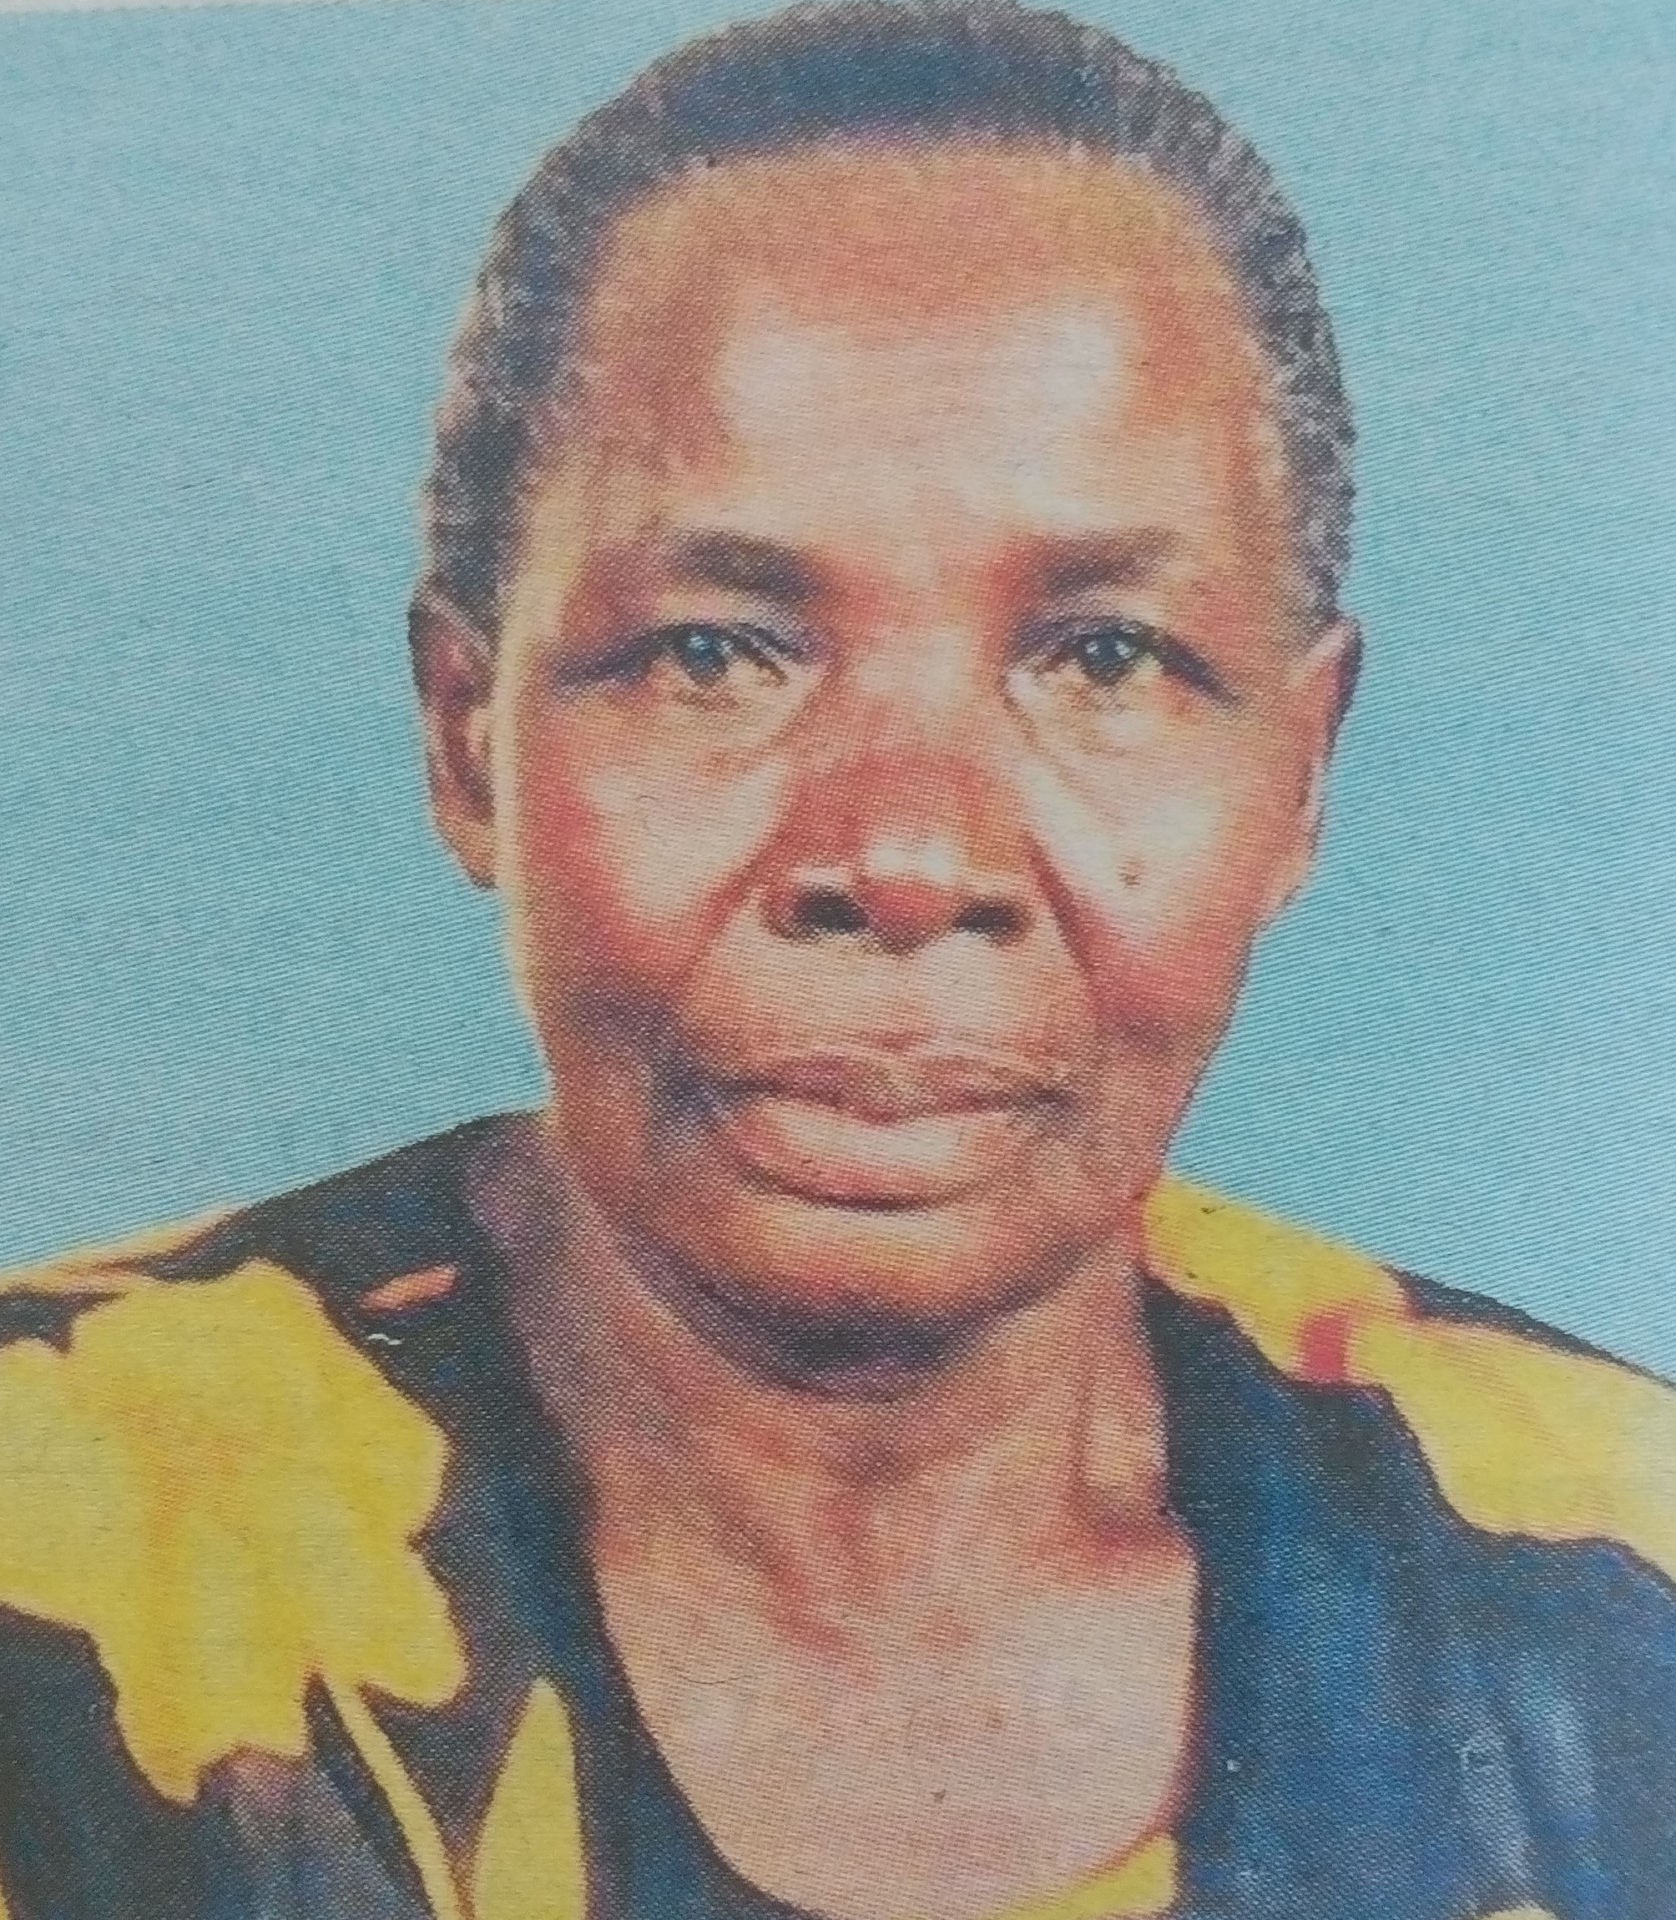 Obituary Image of Mama Mary Owano